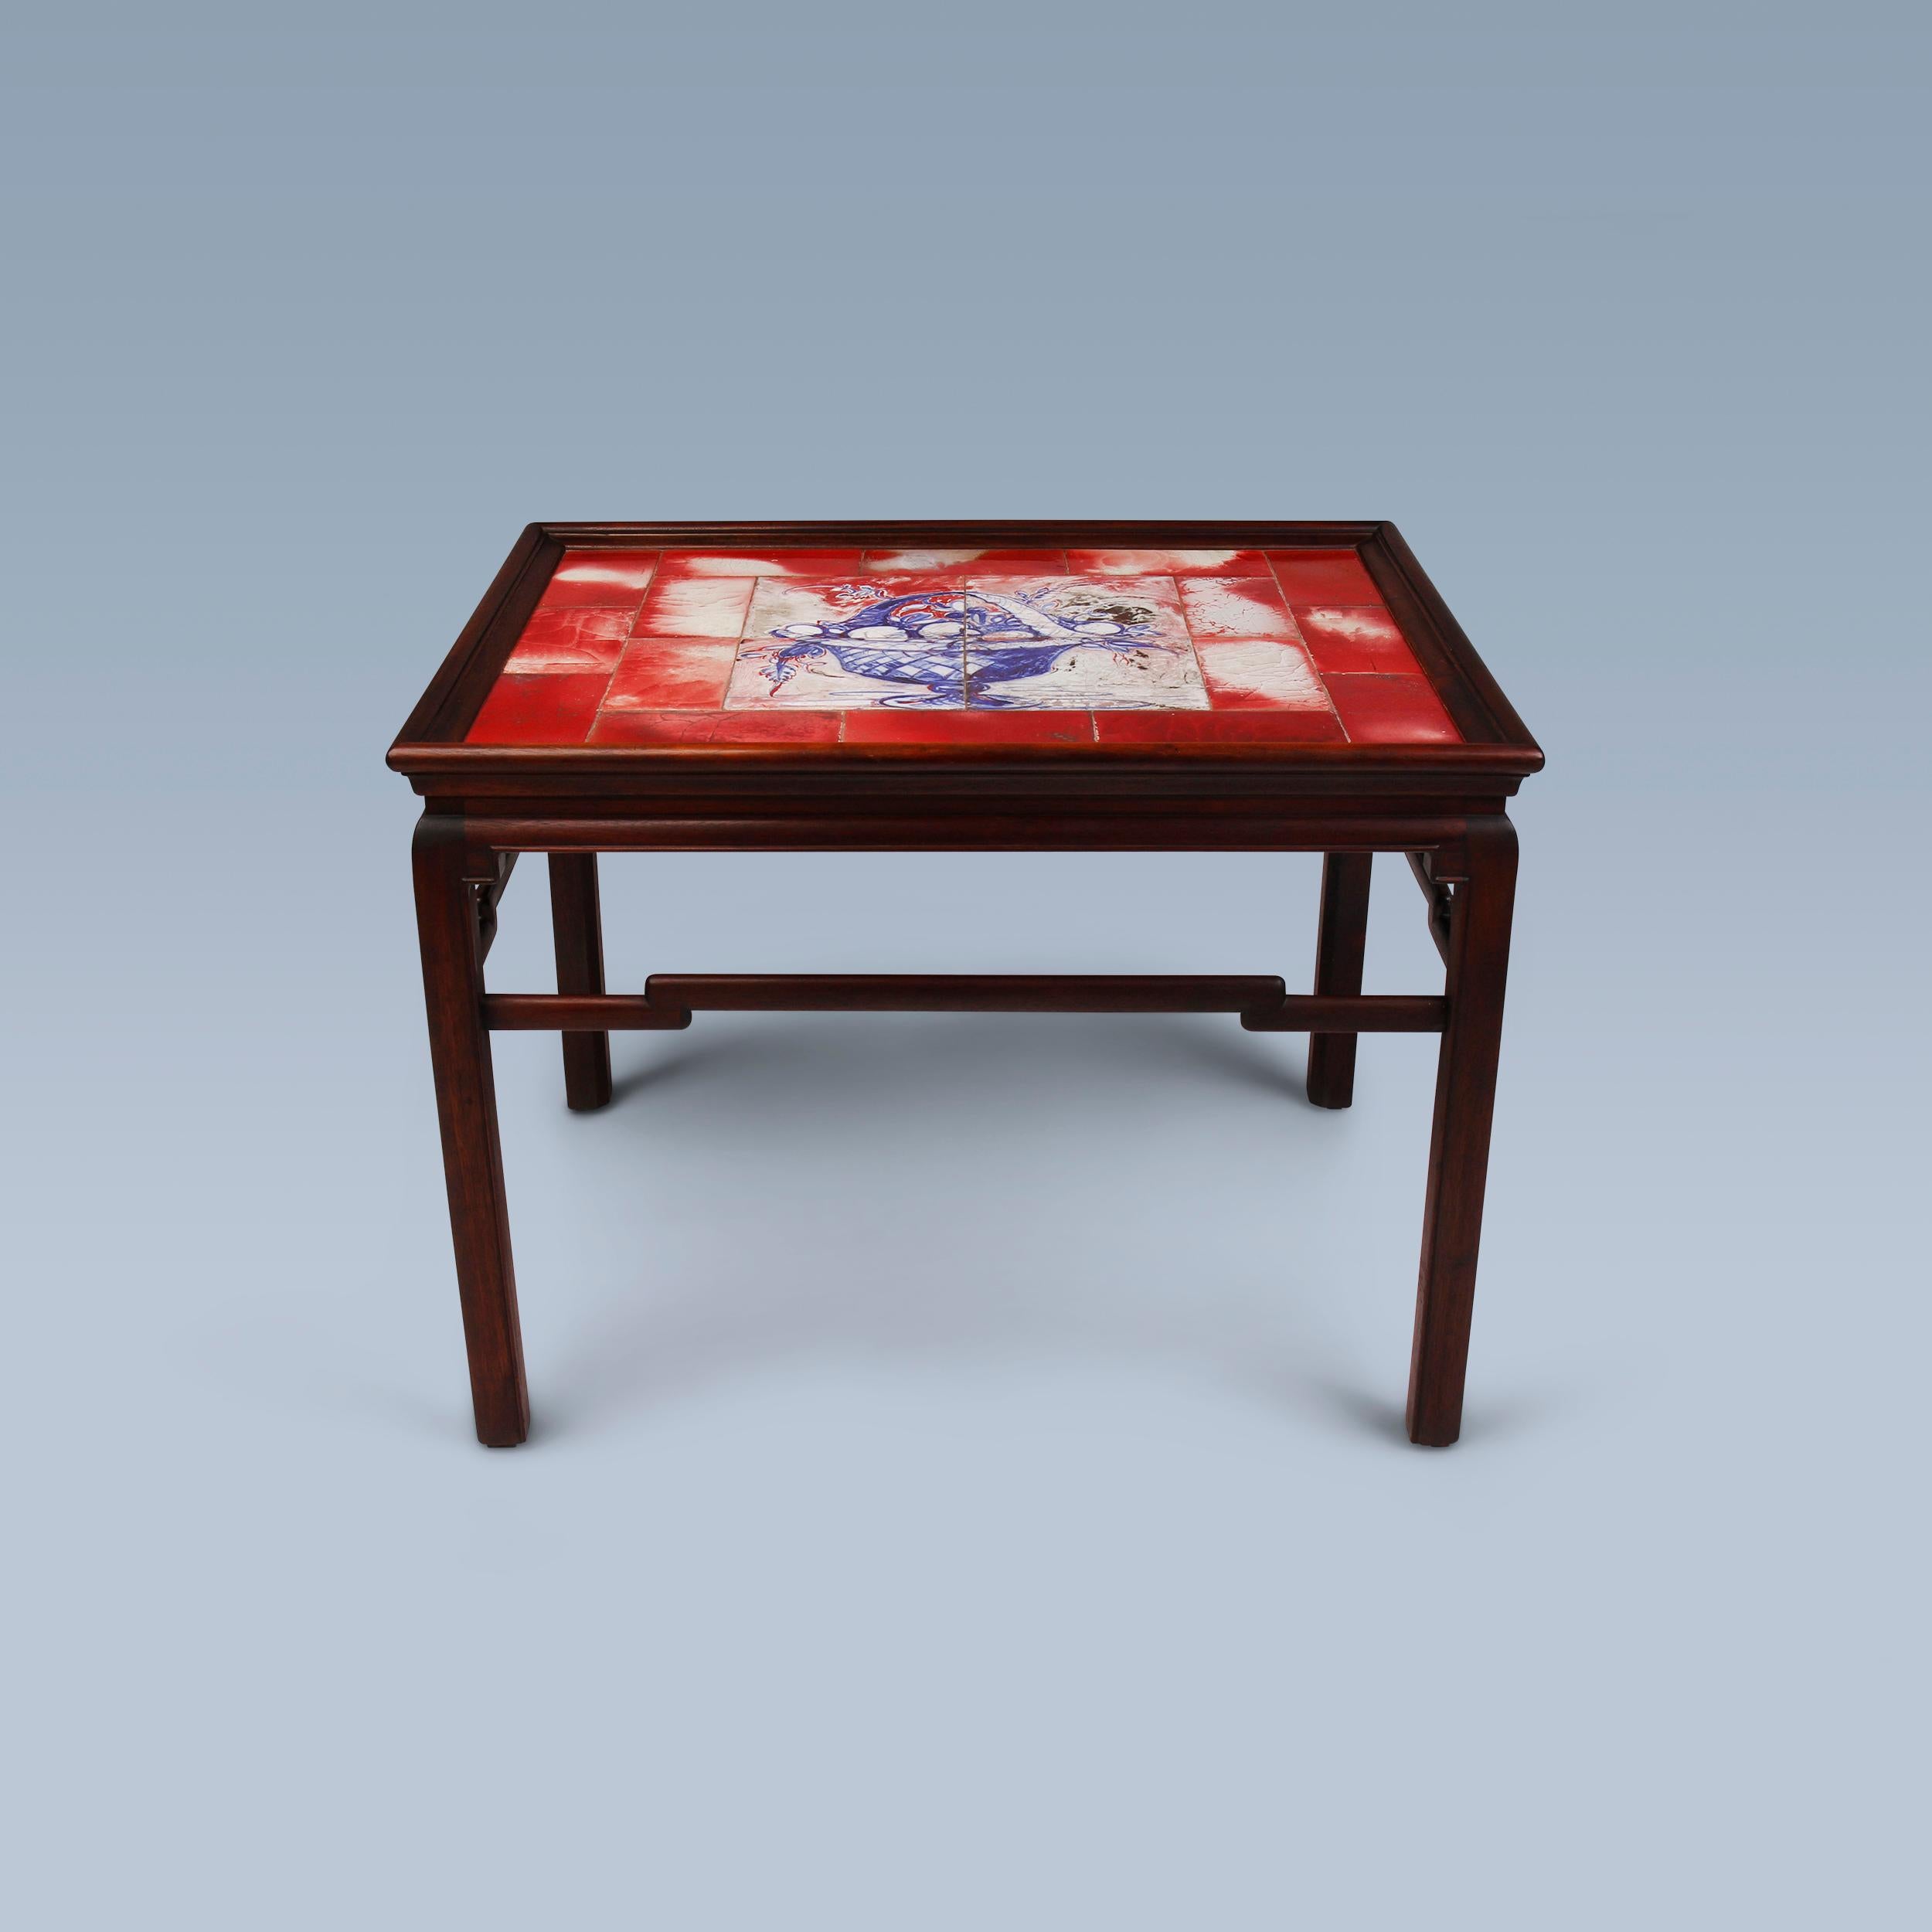 Danois Table basse d'inspiration chinoise avec carreaux aux nuances rouges, blanches et bleues en vente